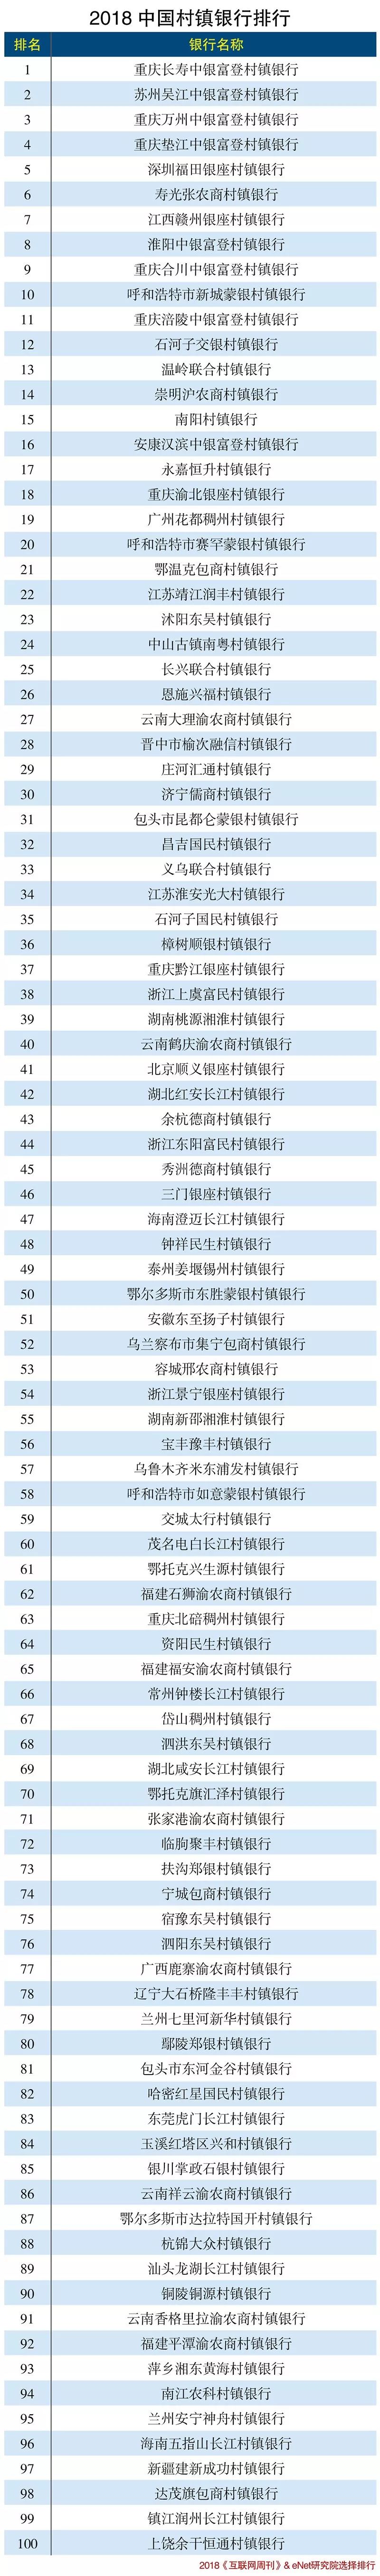 2018年中国村镇银行百强排行榜